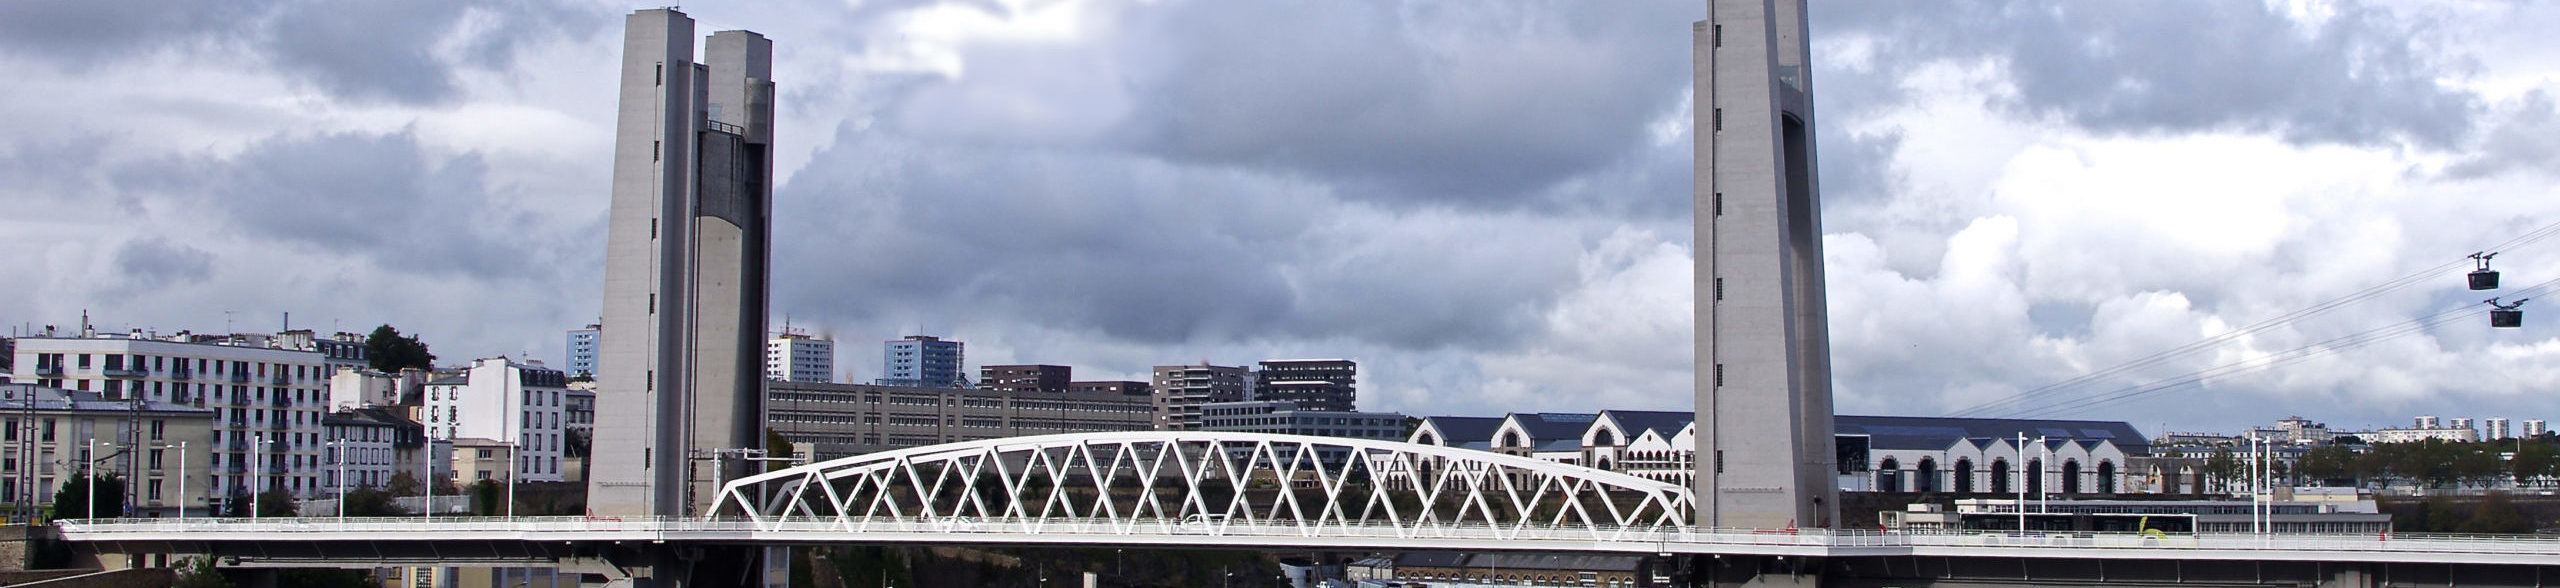 Photo du pont de Recouvrance de Brest, Ville de la loge de francs-maçons Iroise, de l'ordre maçonnique mixte international le Droit Humain